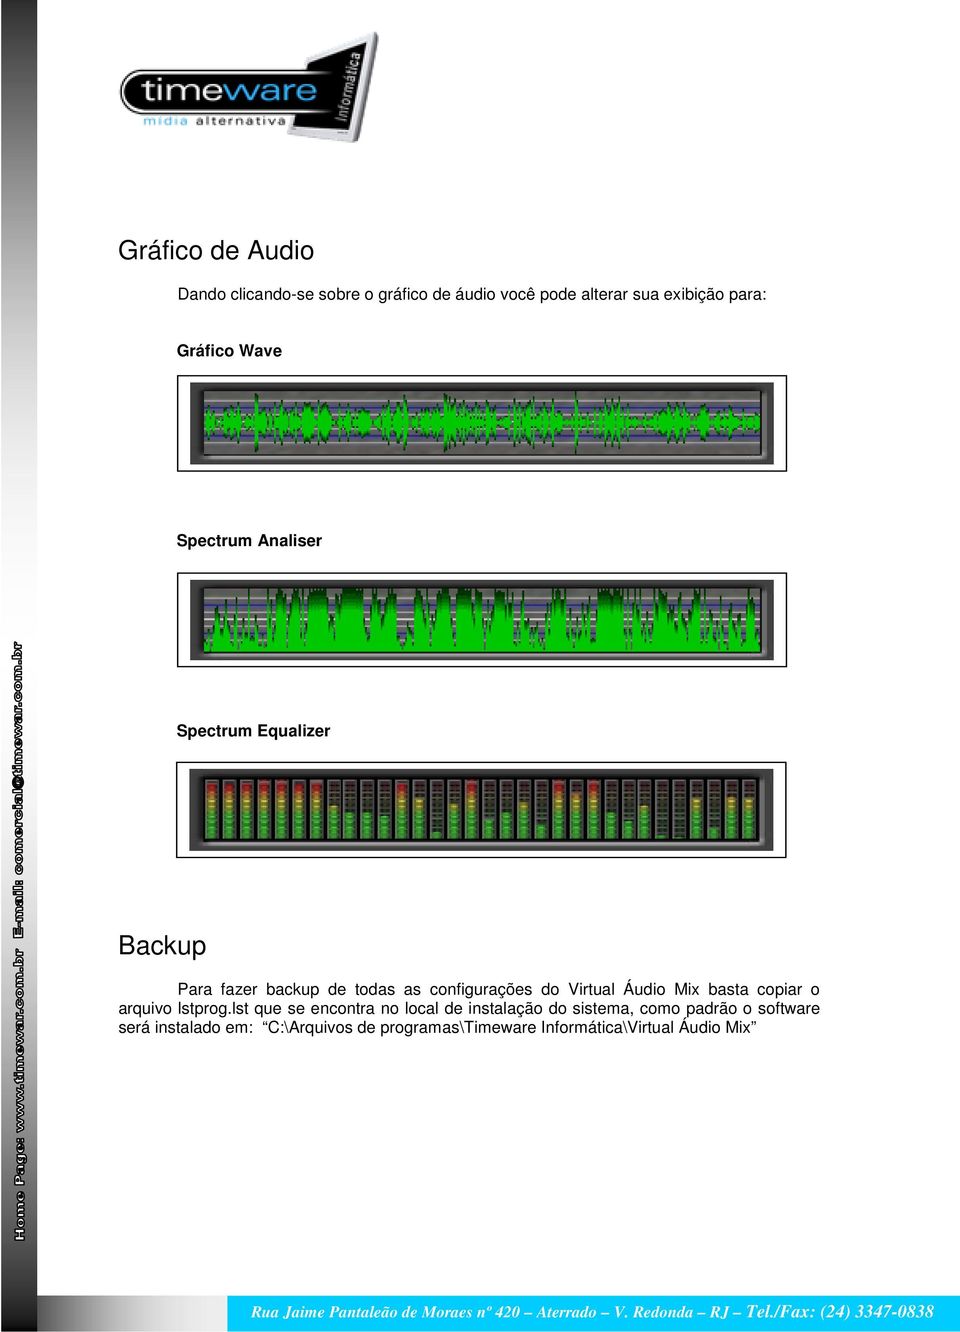 do Virtual Áudio Mix basta copiar o arquivo lstprog.